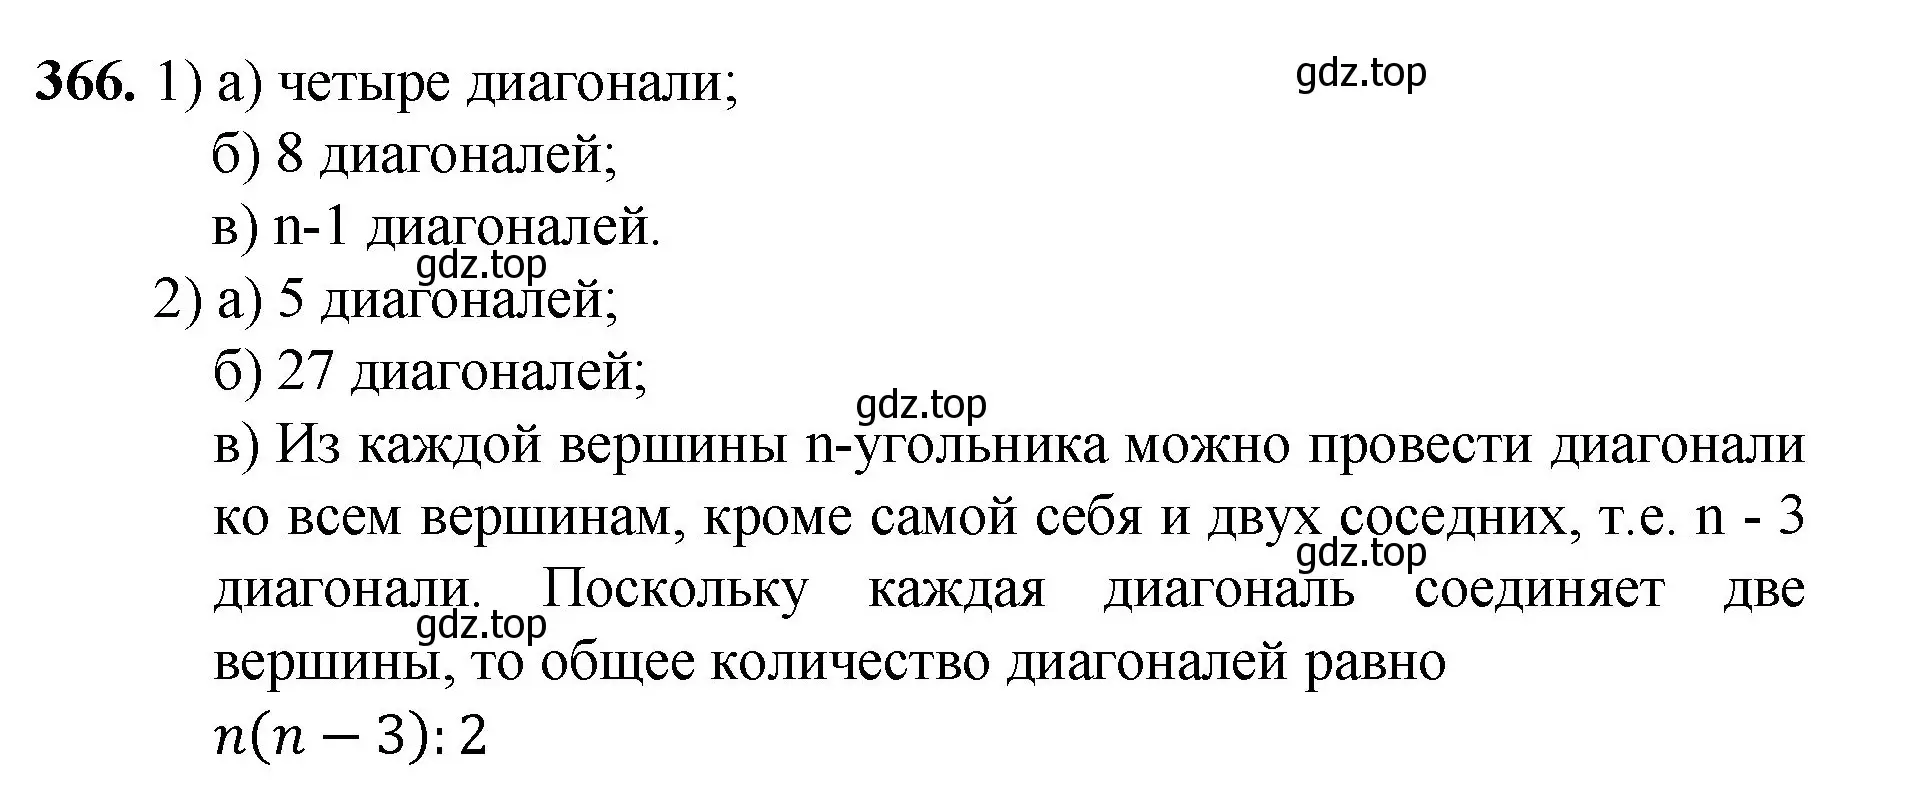 Решение номер 366 (страница 96) гдз по математике 5 класс Мерзляк, Полонский, учебник